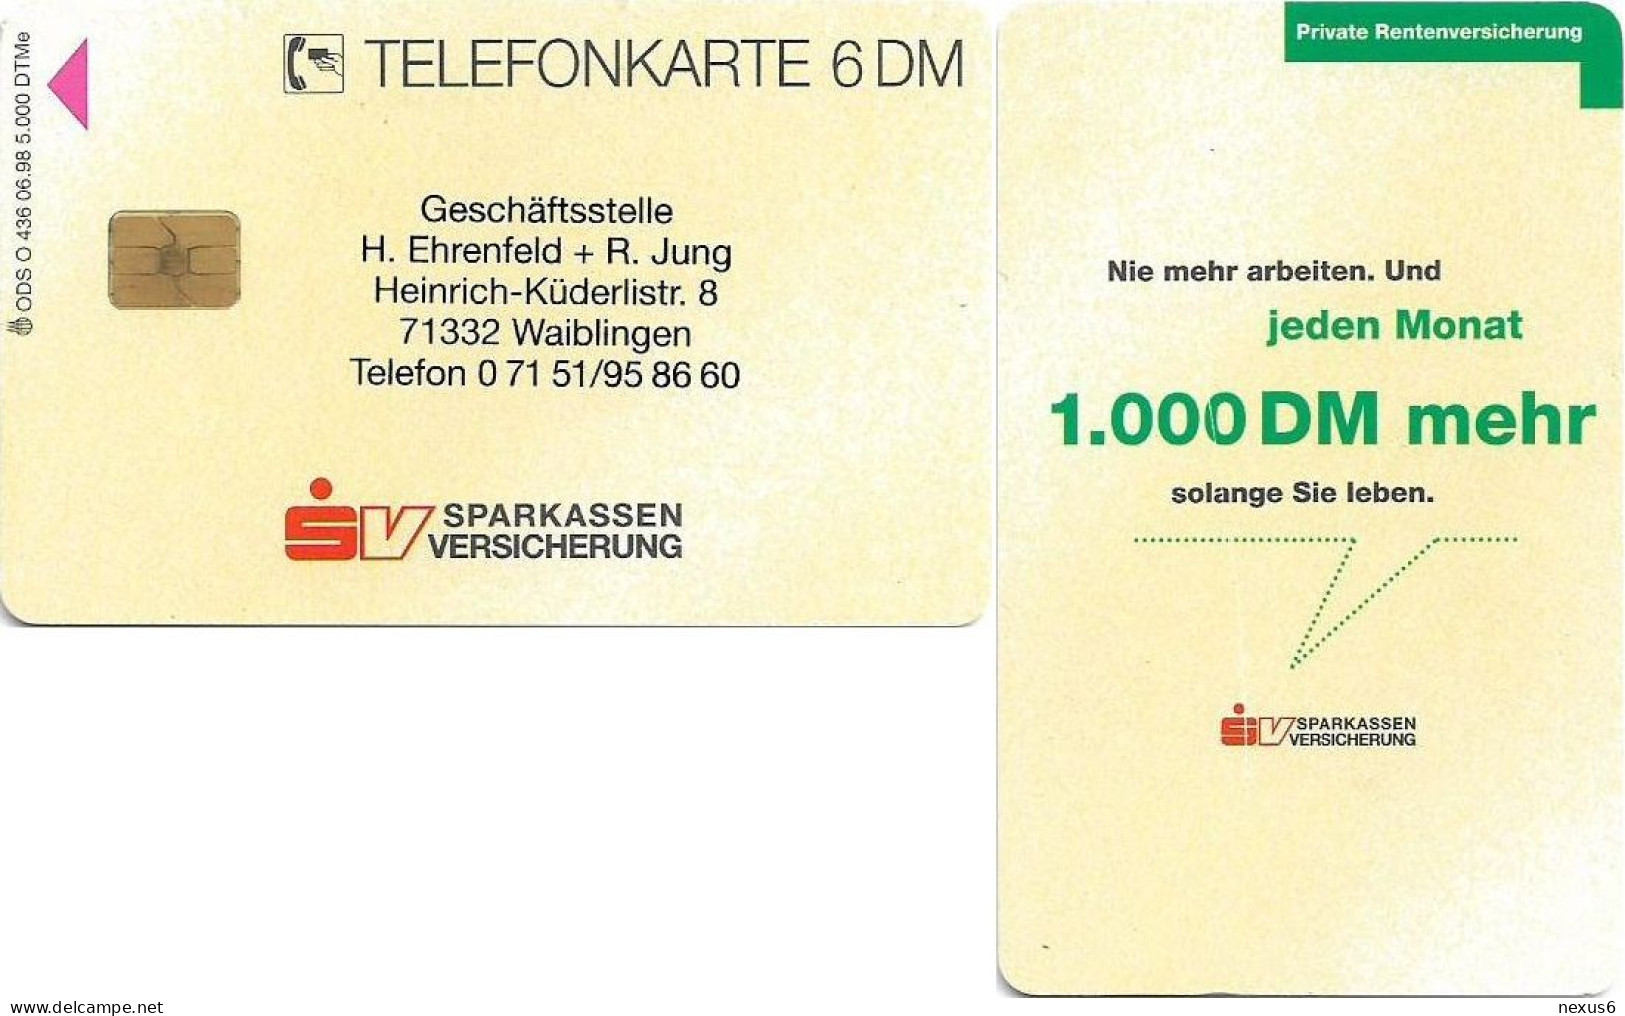 Germany - Sparkassen Versicherung 5 (Overprint ''Ehrenfeld & Jung'') - O 0436 - 06.1998, 6DM, Used - O-Series: Kundenserie Vom Sammlerservice Ausgeschlossen